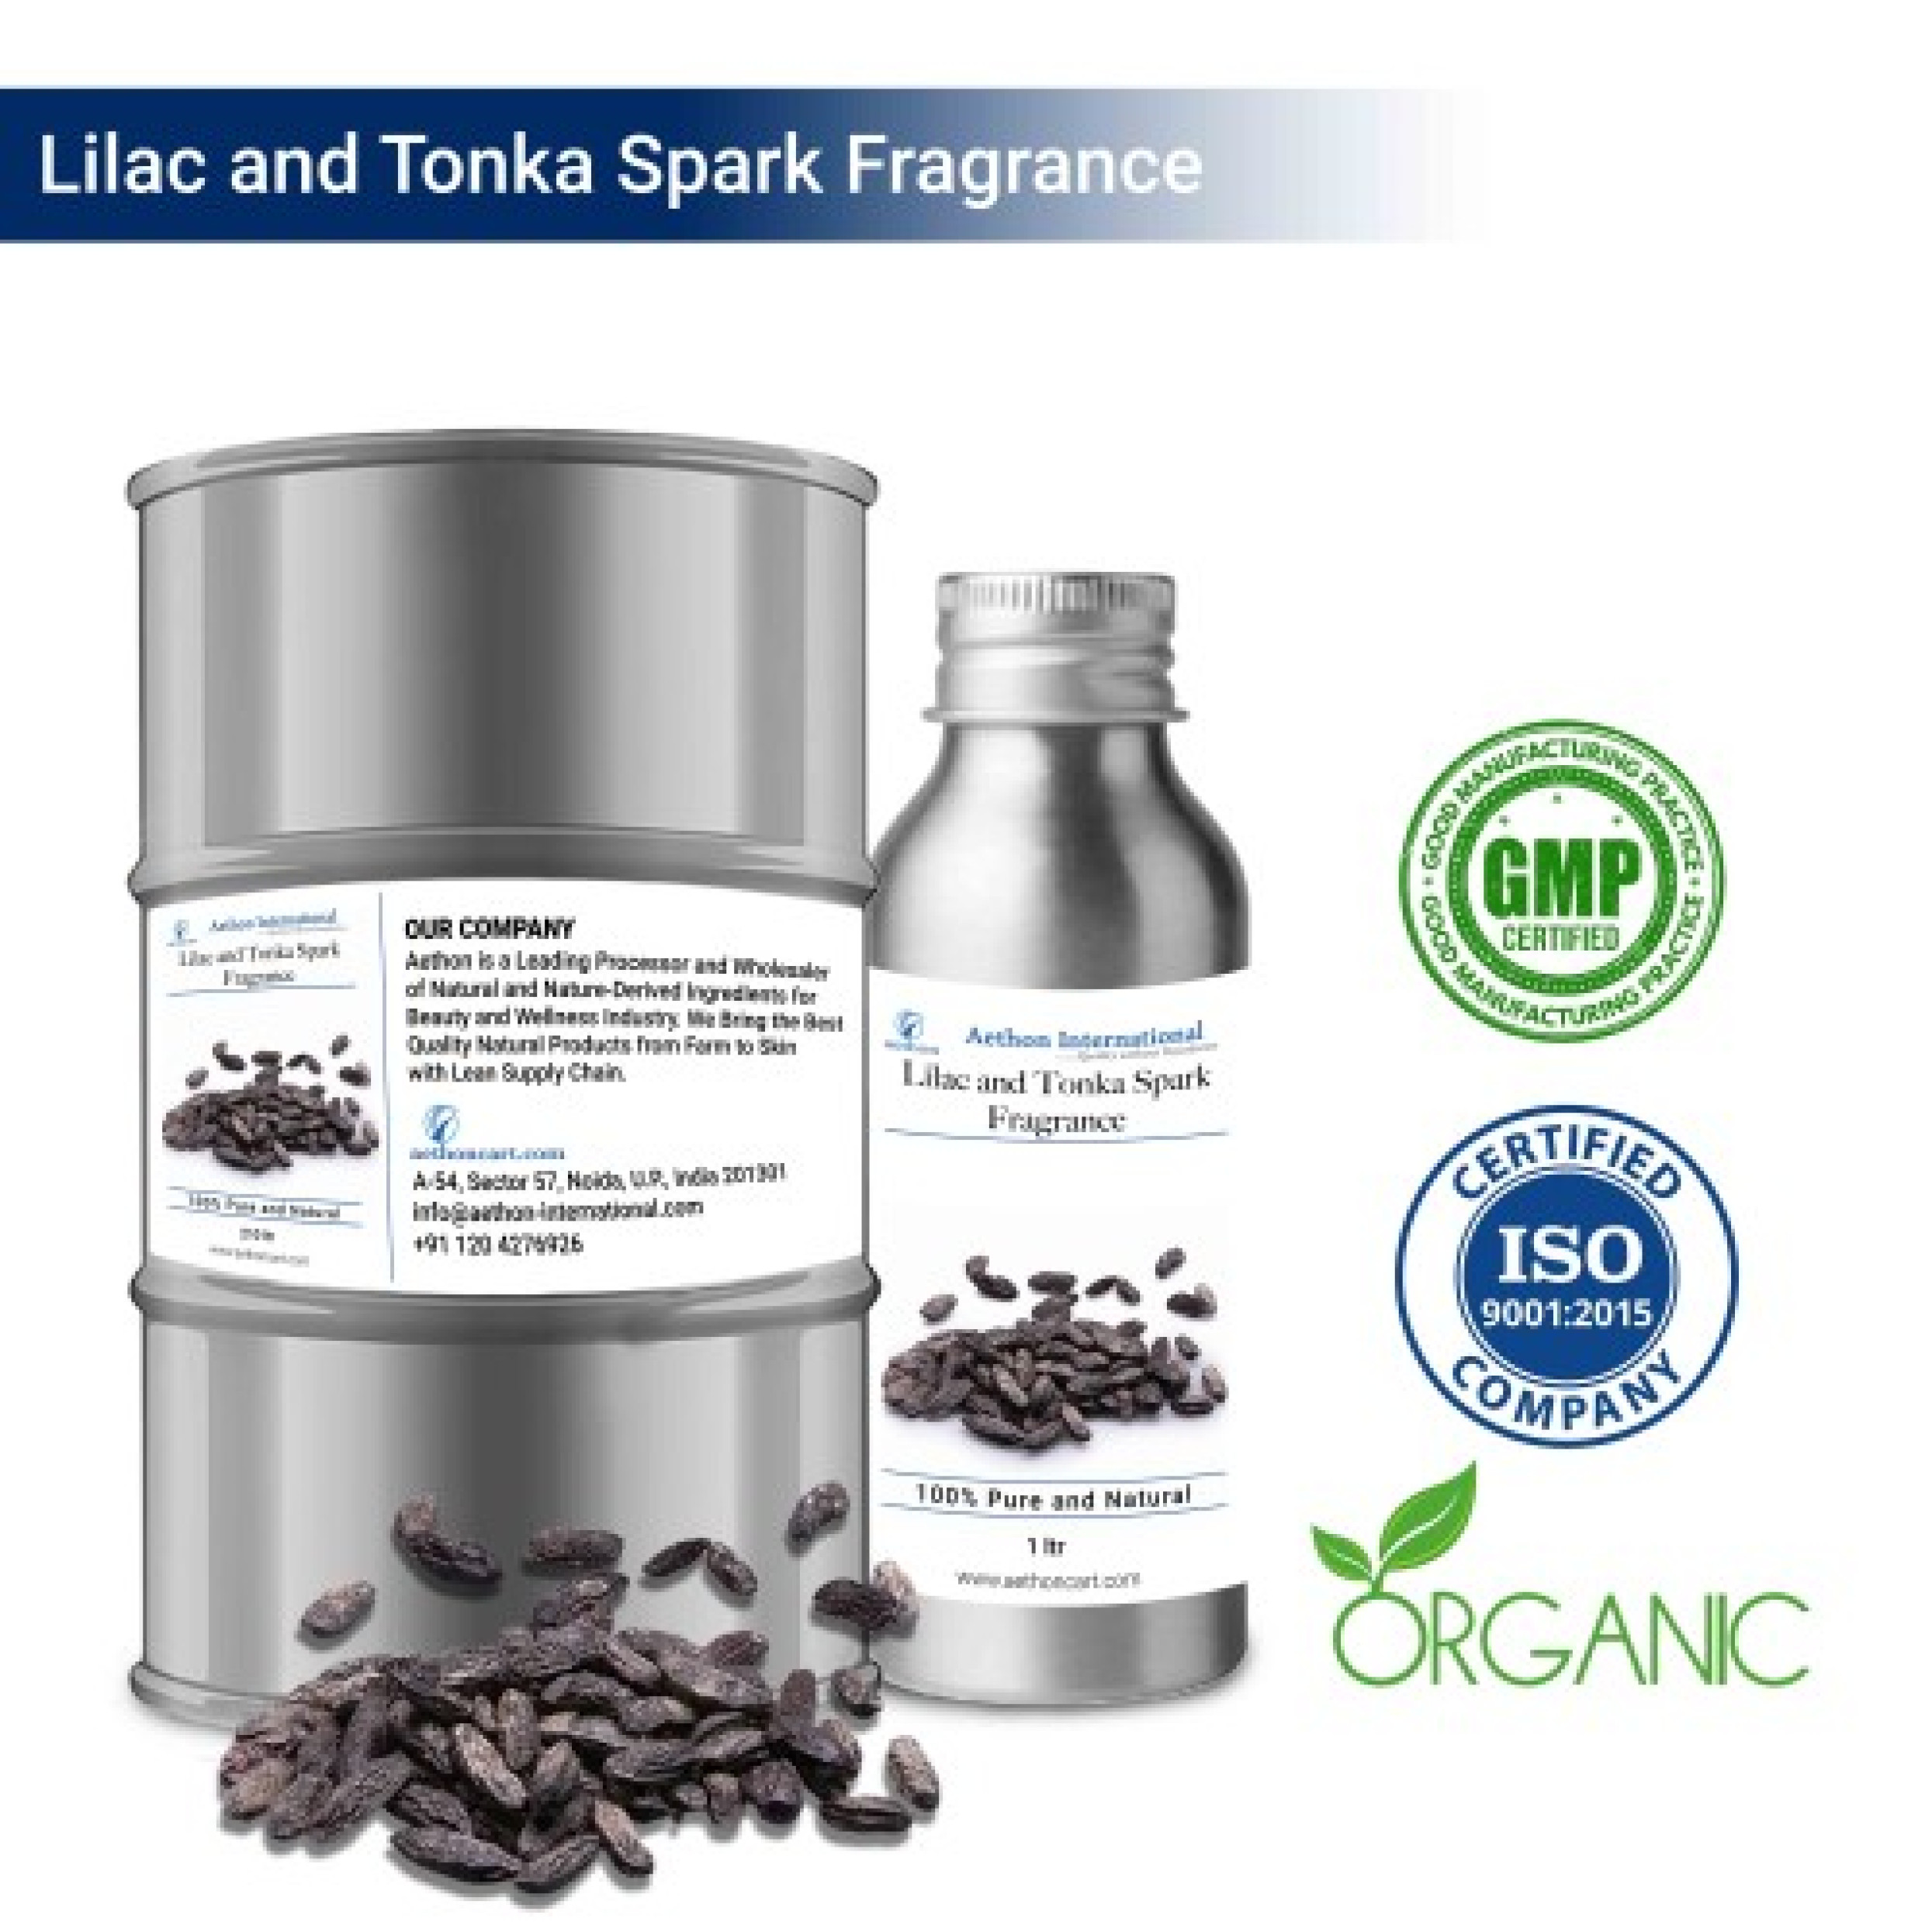 Lilac and Tonka Spark Fragrance